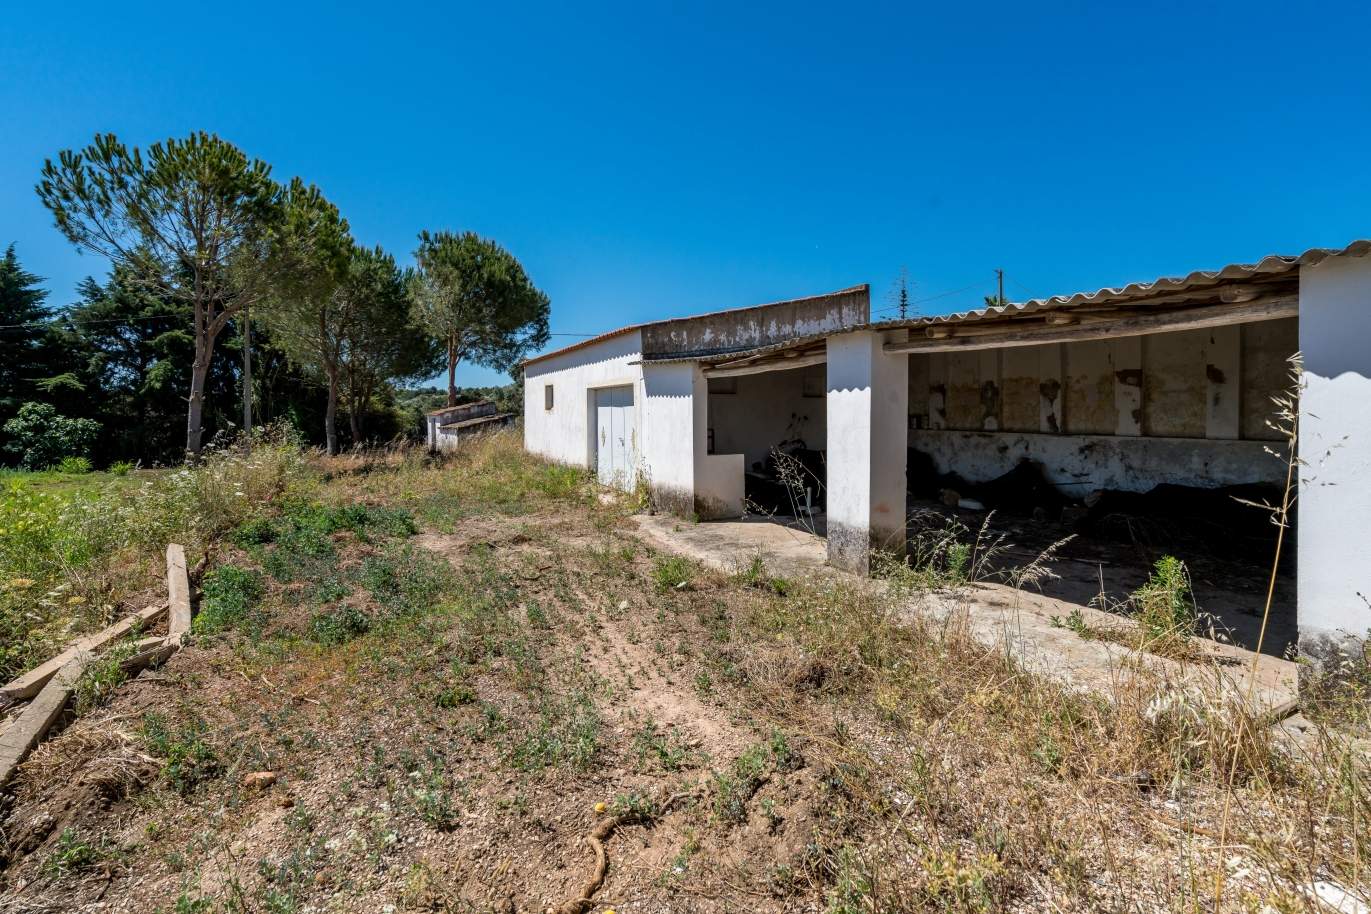 Venda de propriedade em Alcantarilha, Silves, Algarve_105715